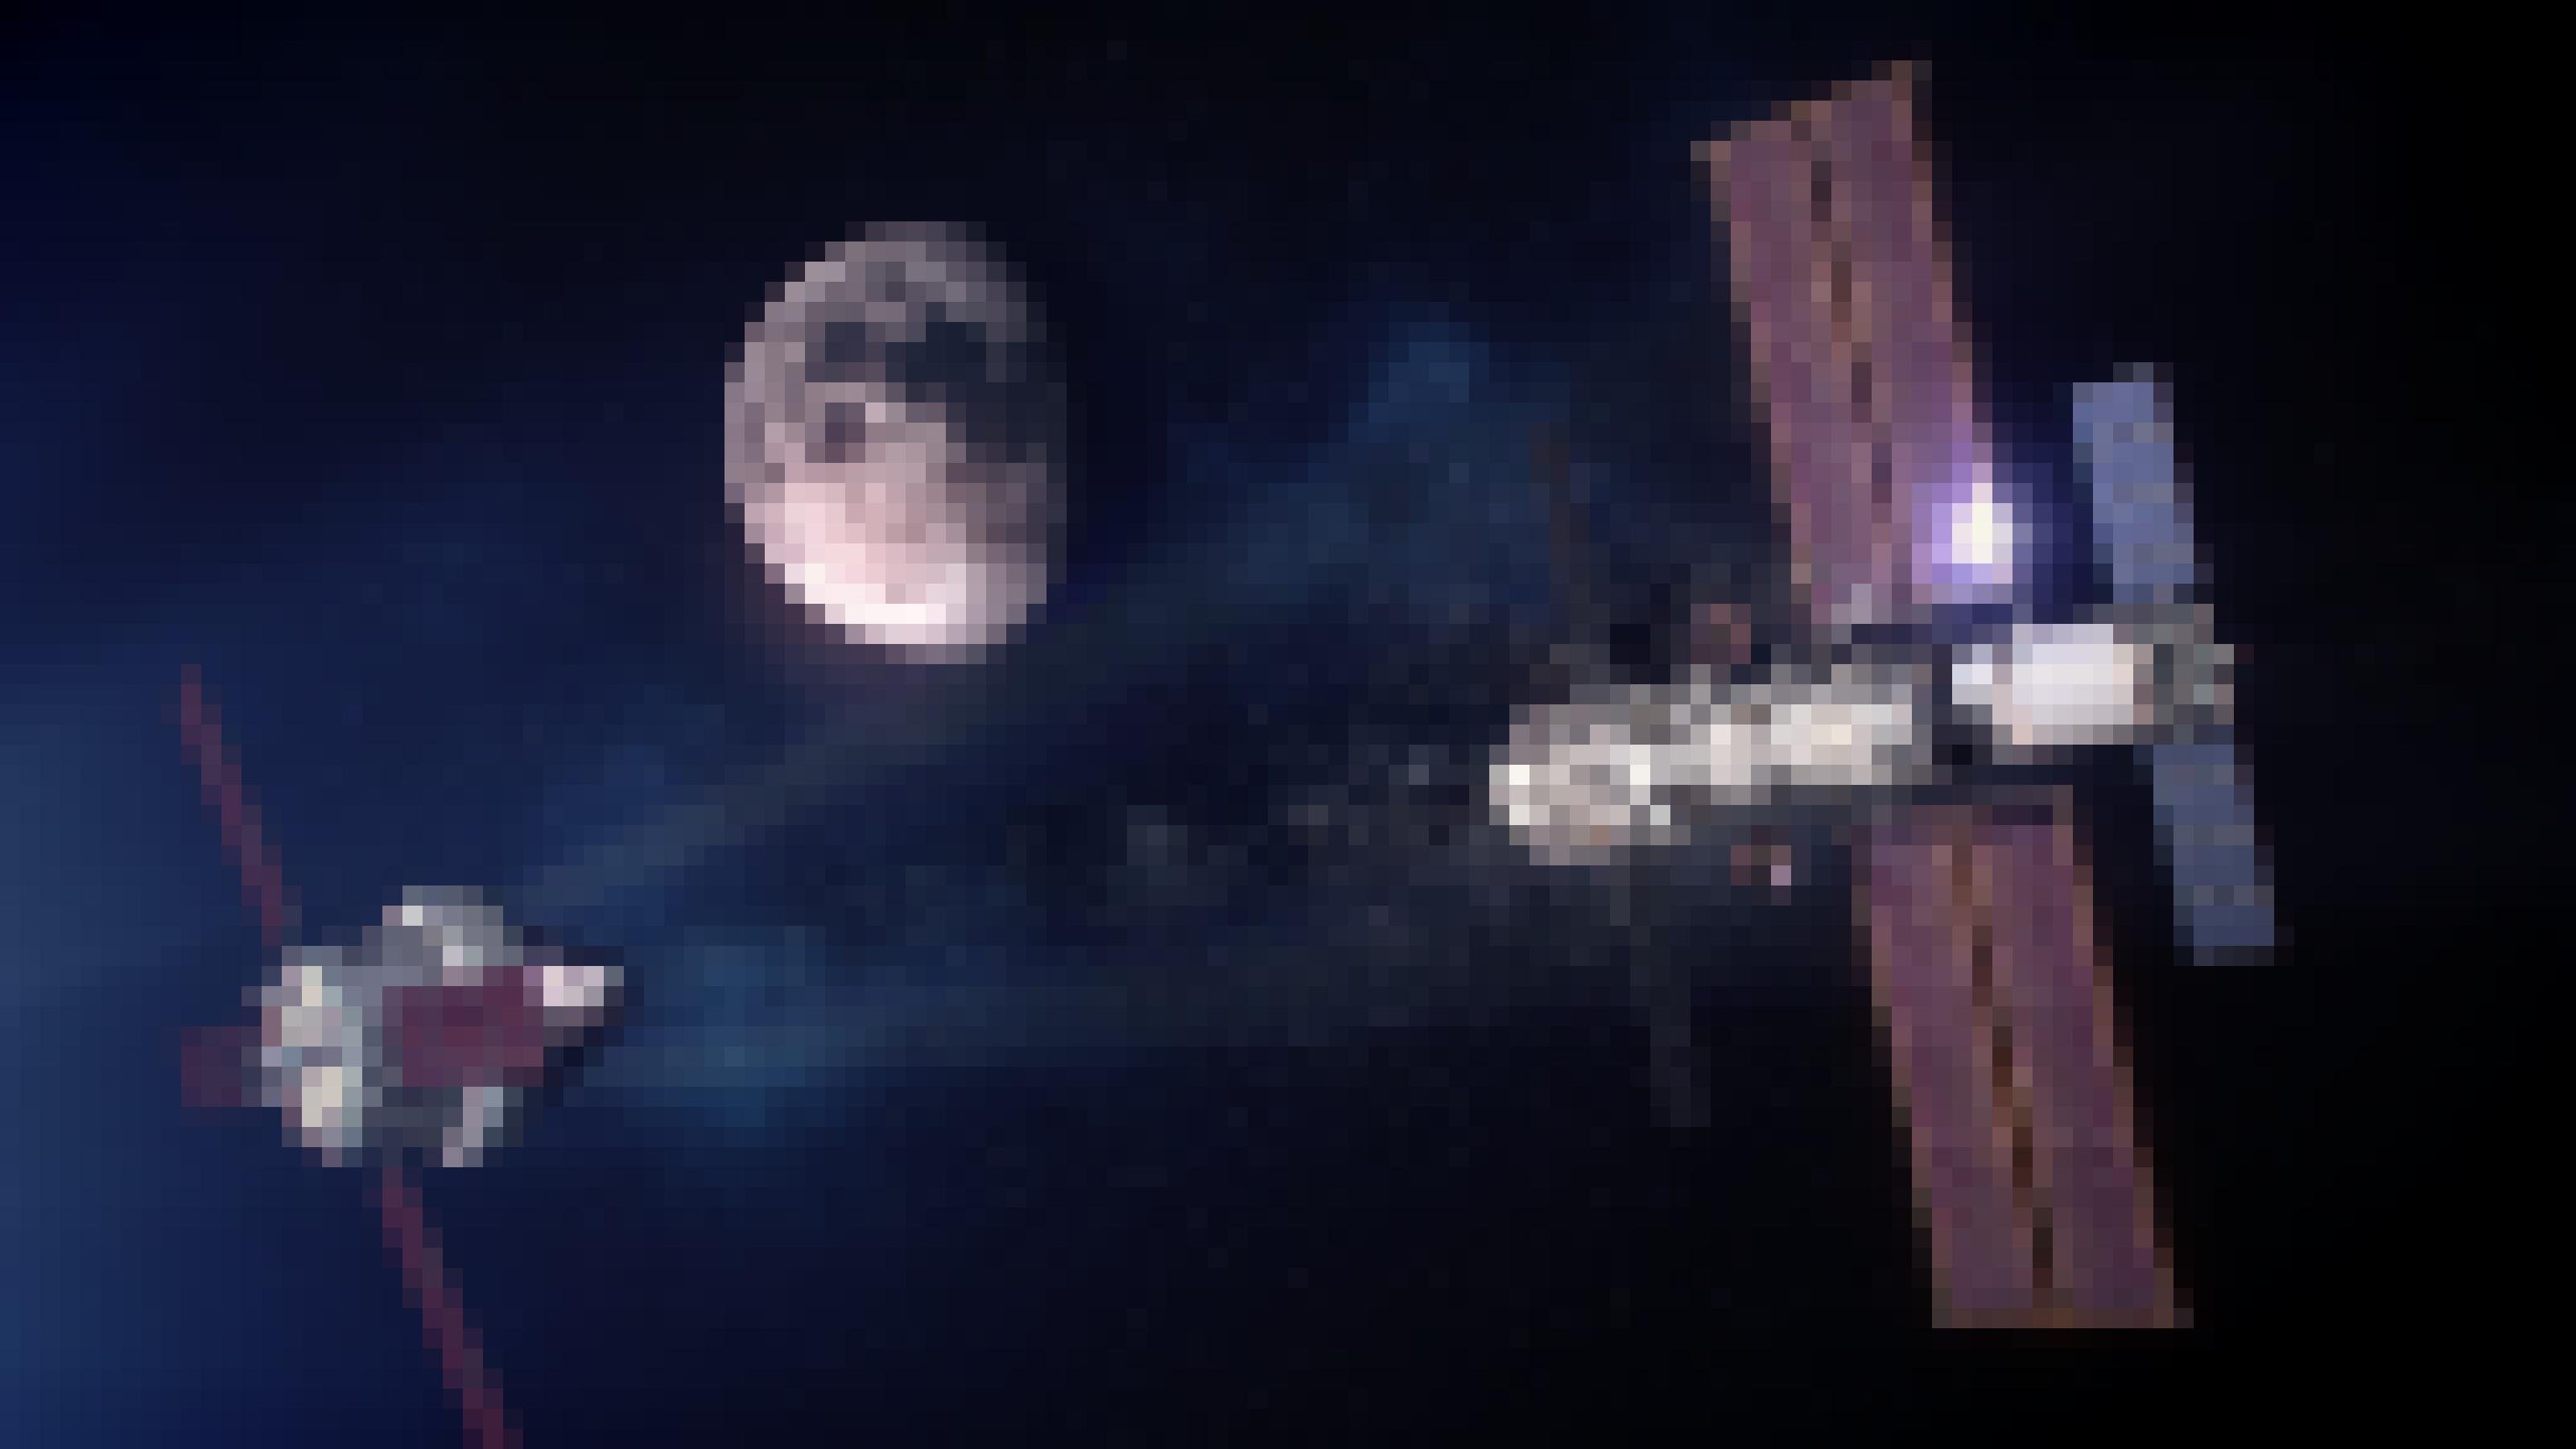 Eine künstlerische Weltraum-Darstellung des Lunar Gateway (rechts). Einer Raumstation, die in Zukunft den Mond umkreisen soll (mittig im Hintergrund). Von links flliegt das Orion-Raumschiff ins Bild – dem Raumschiff, mit dem die US-Raumfahrtbehörde NASA seine Crew-Mitglieder zum Mond bringen will.